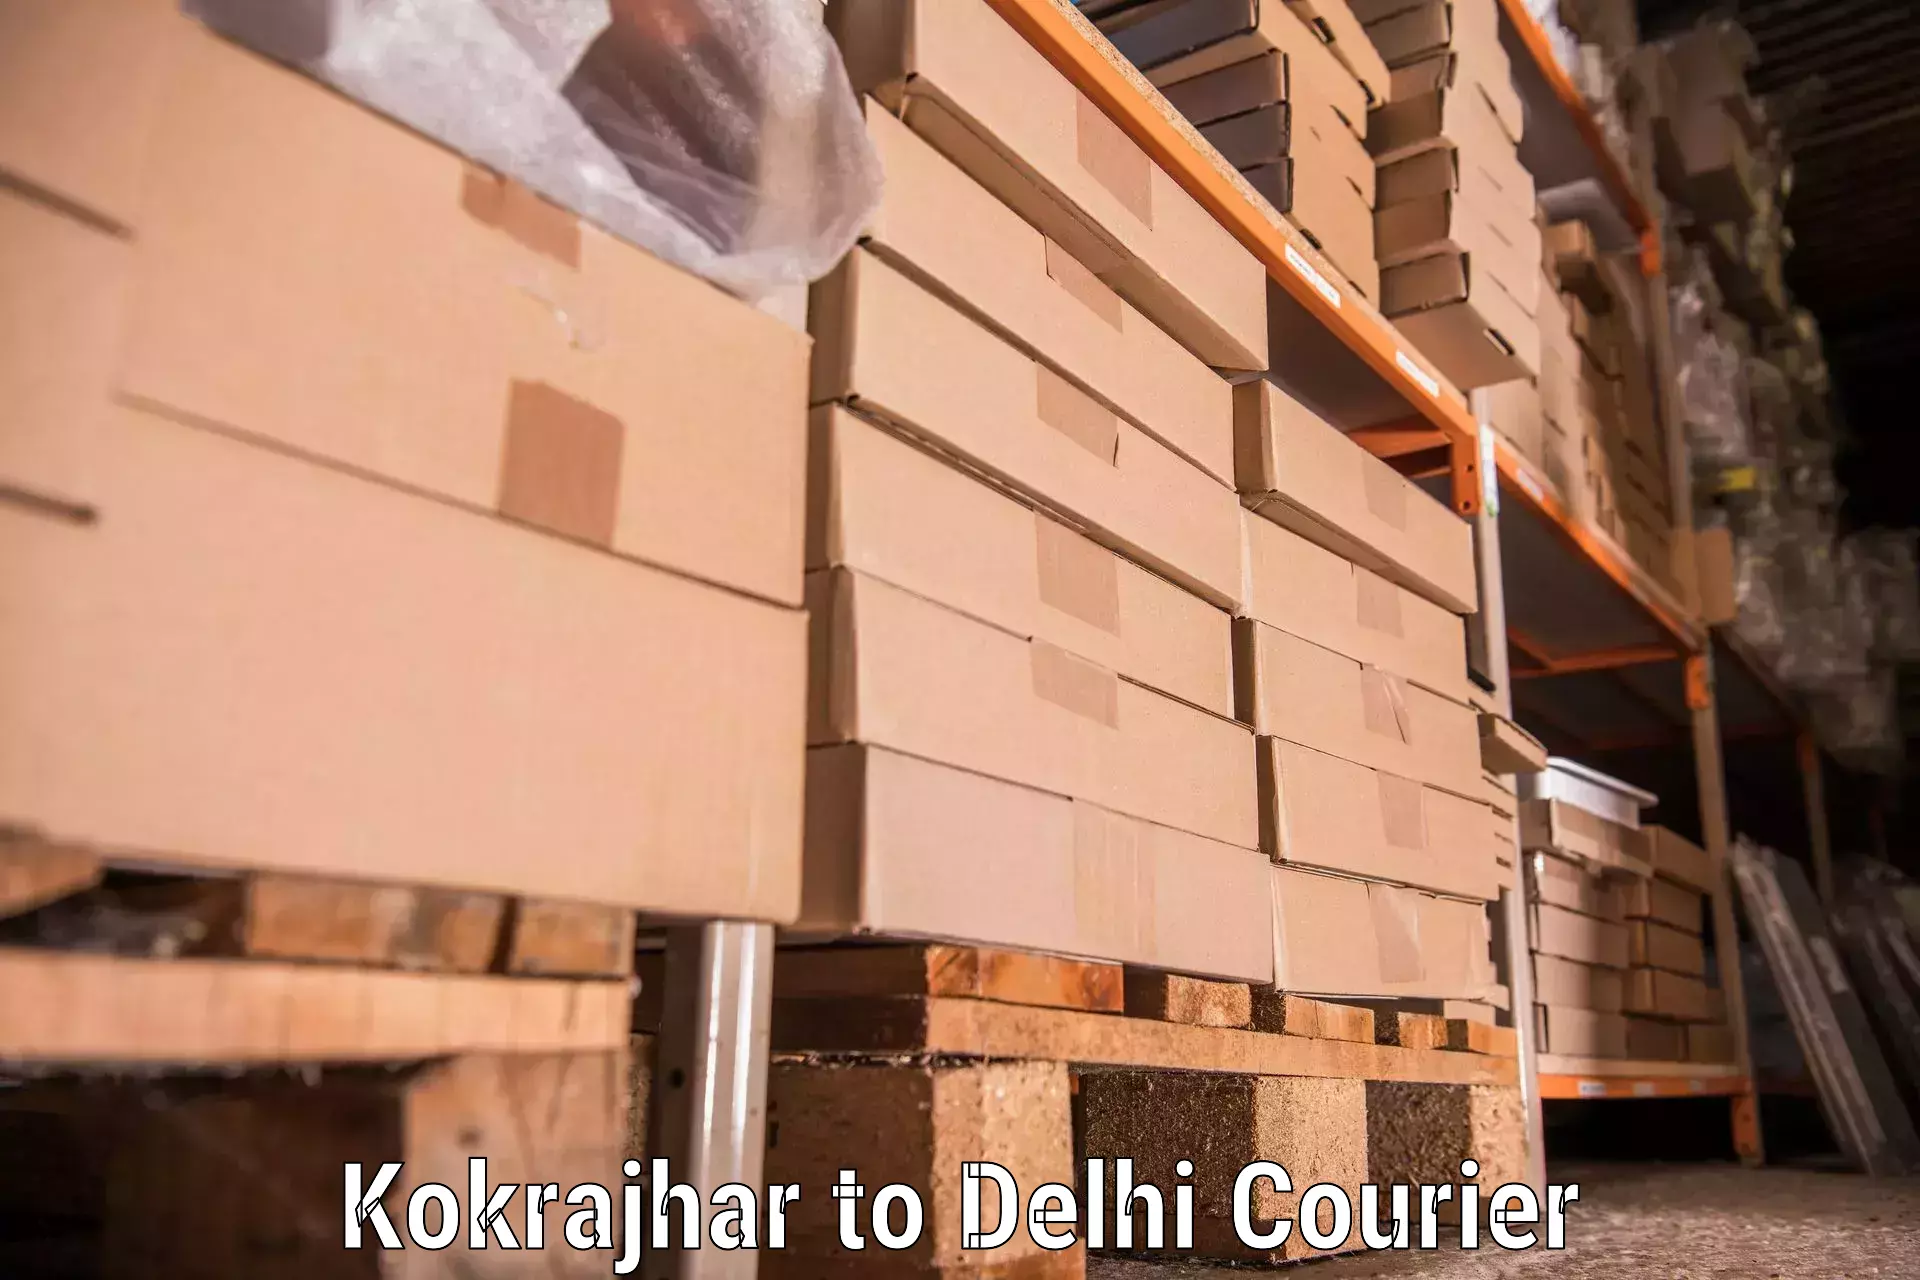 Professional moving assistance Kokrajhar to NIT Delhi